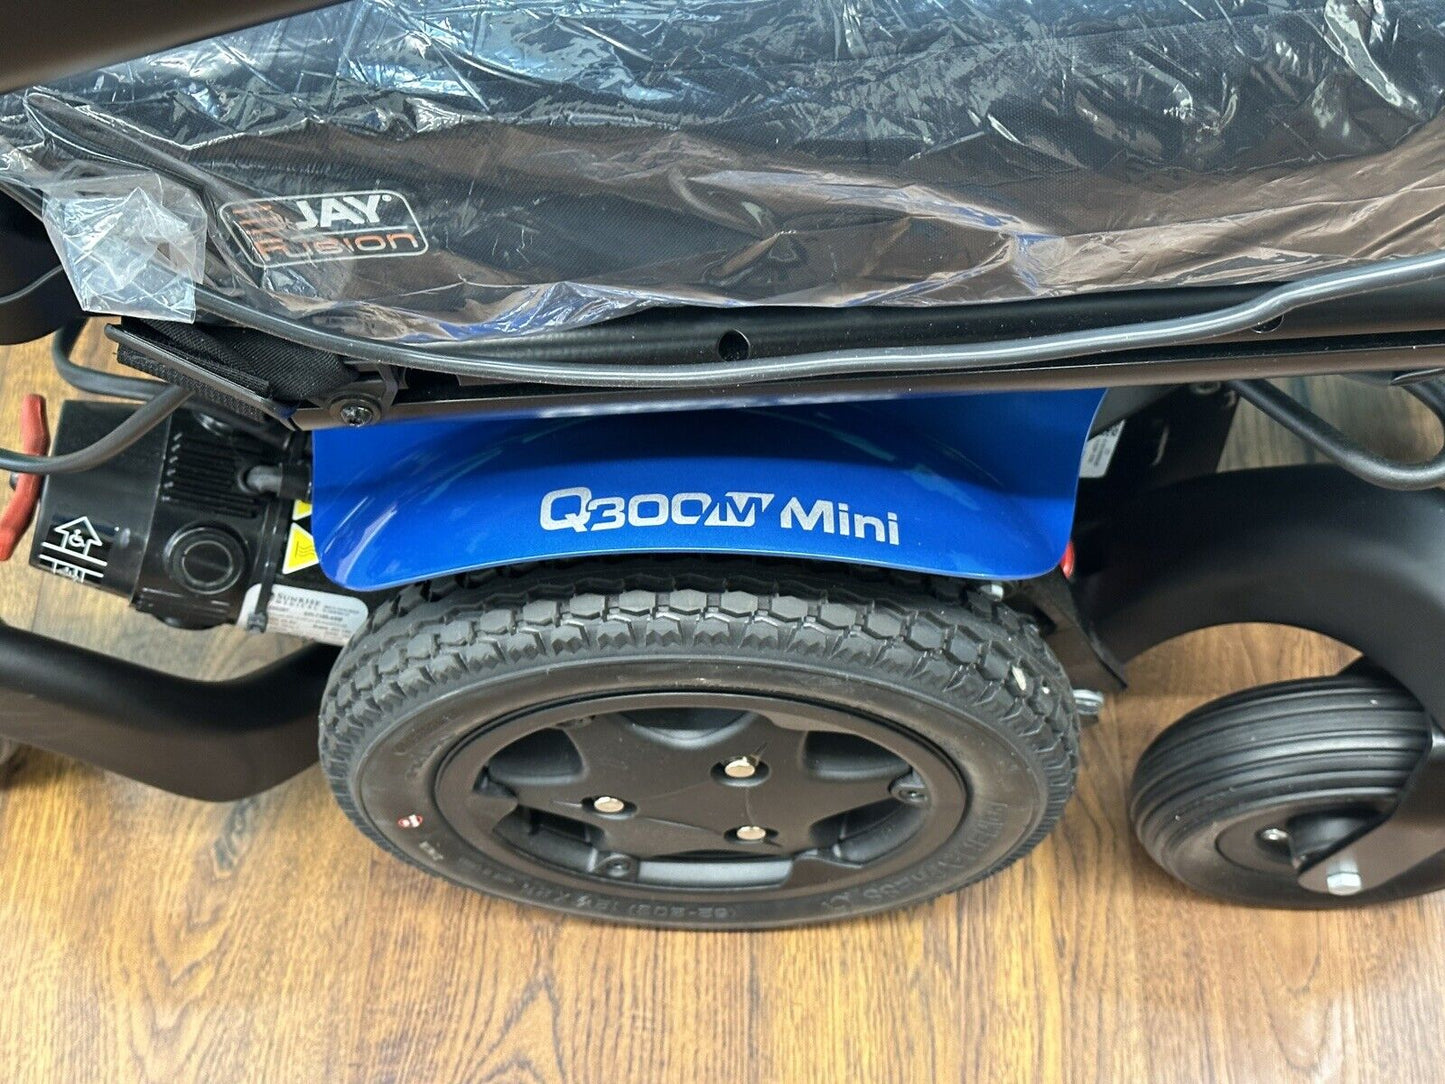 2021 Quickie Q300m Mini w/Power Tilt & 2 Power Footrest Functions 0 Miles* #7504